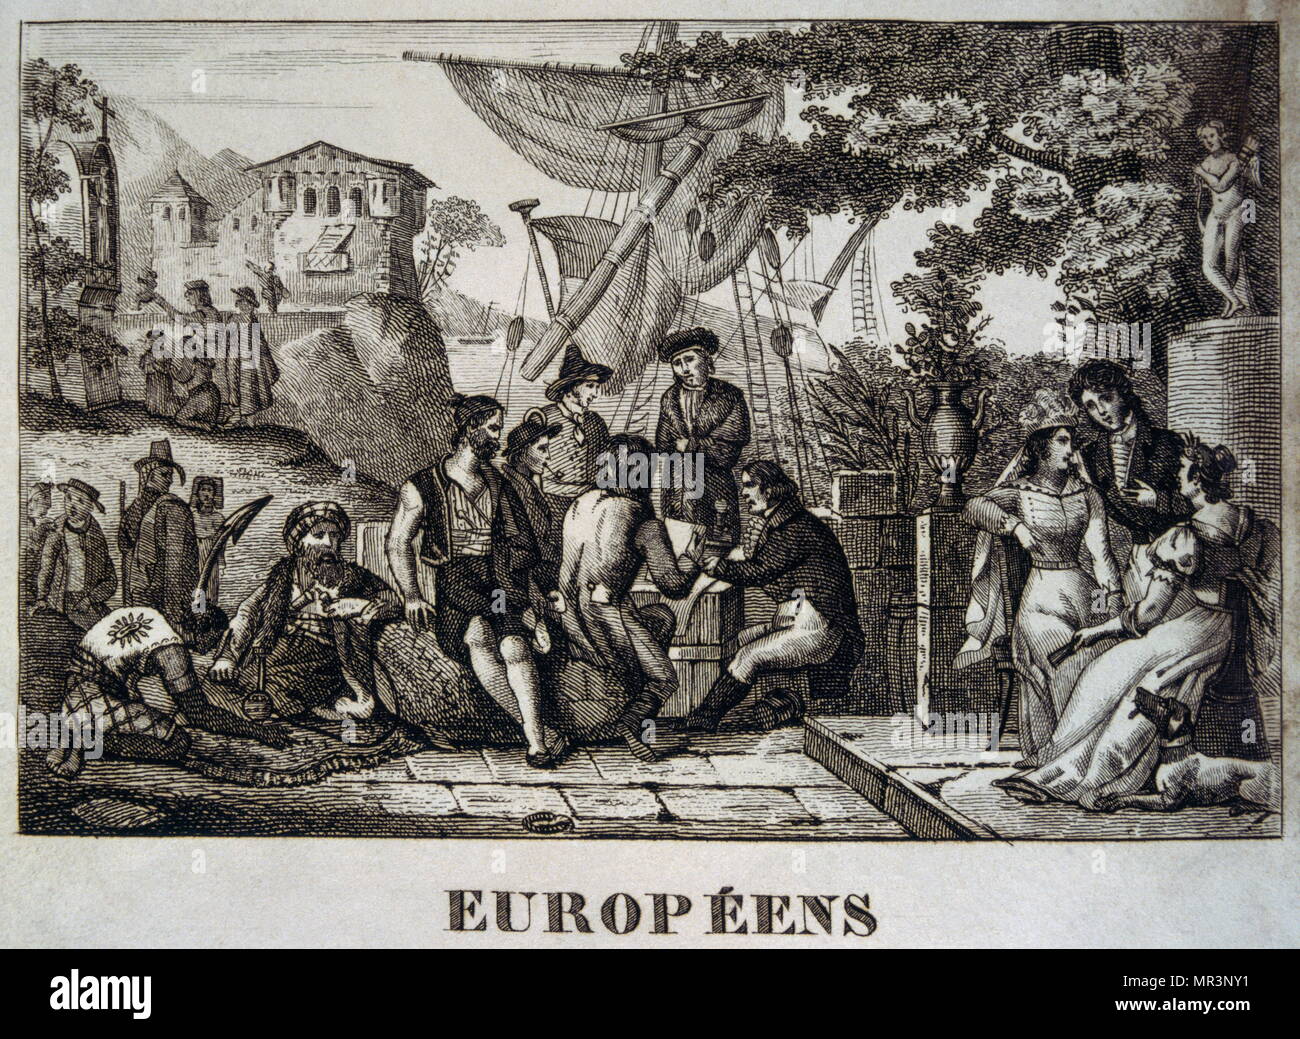 Illustration Les négociants européens et les voyageurs. Français, 1830 Banque D'Images